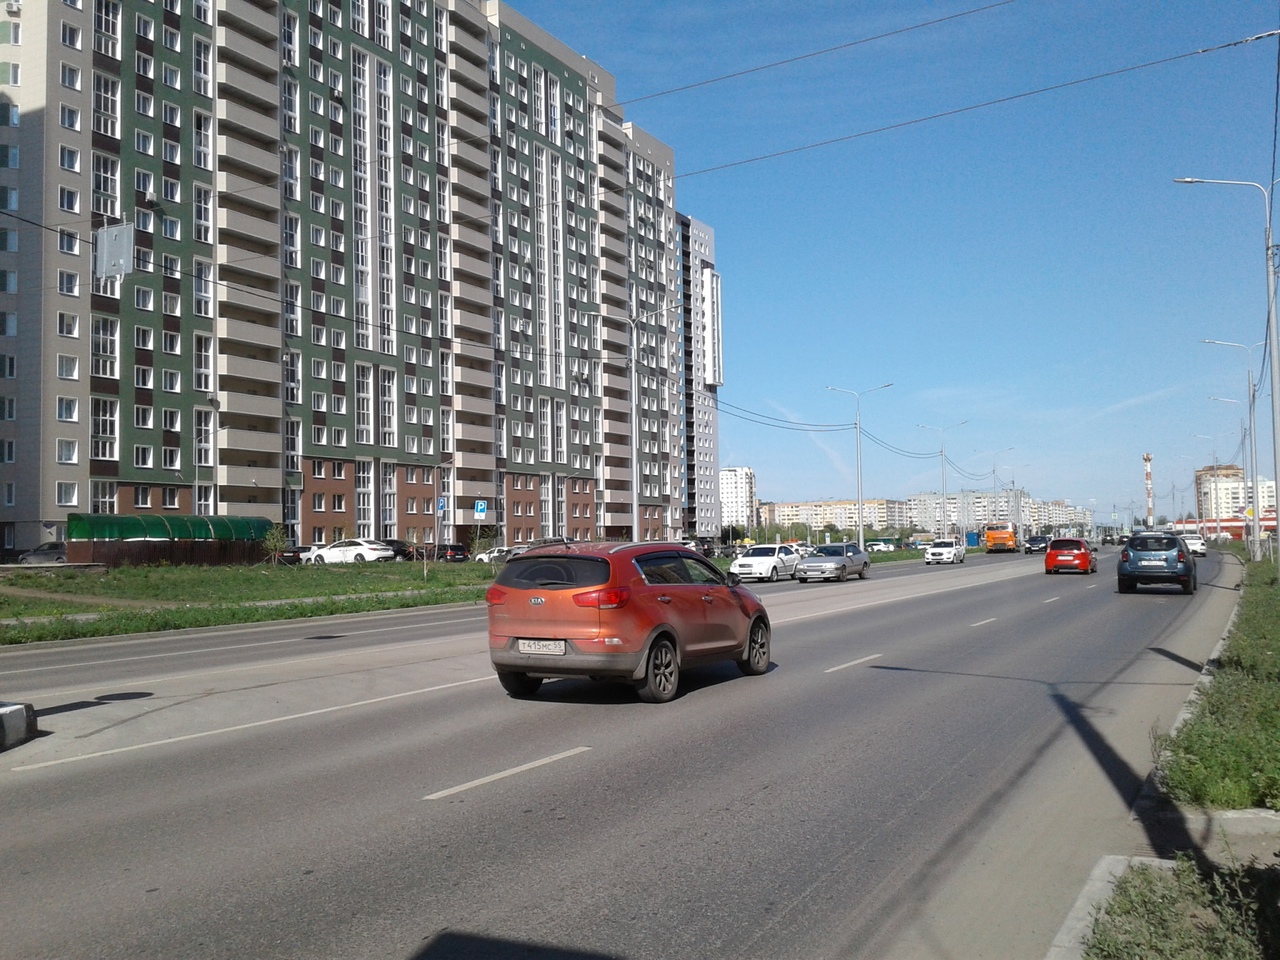 Когда жители Прибрежного и Кузьминок поедут на троллейбусах? #Новости #Общество #Омск